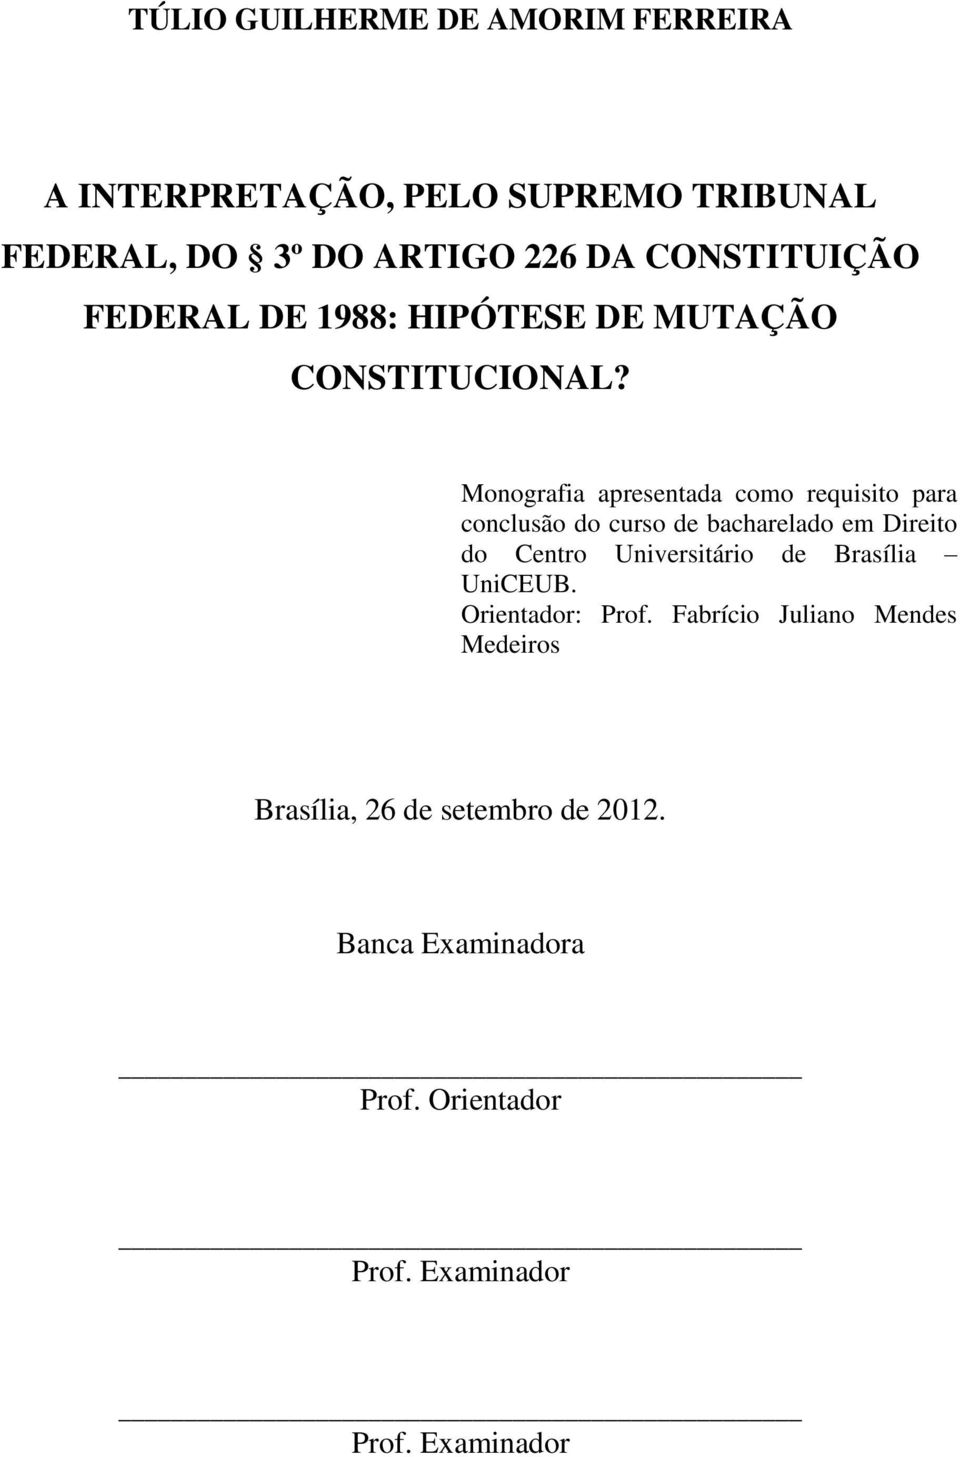 Monografia apresentada como requisito para conclusão do curso de bacharelado em Direito do Centro Universitário de